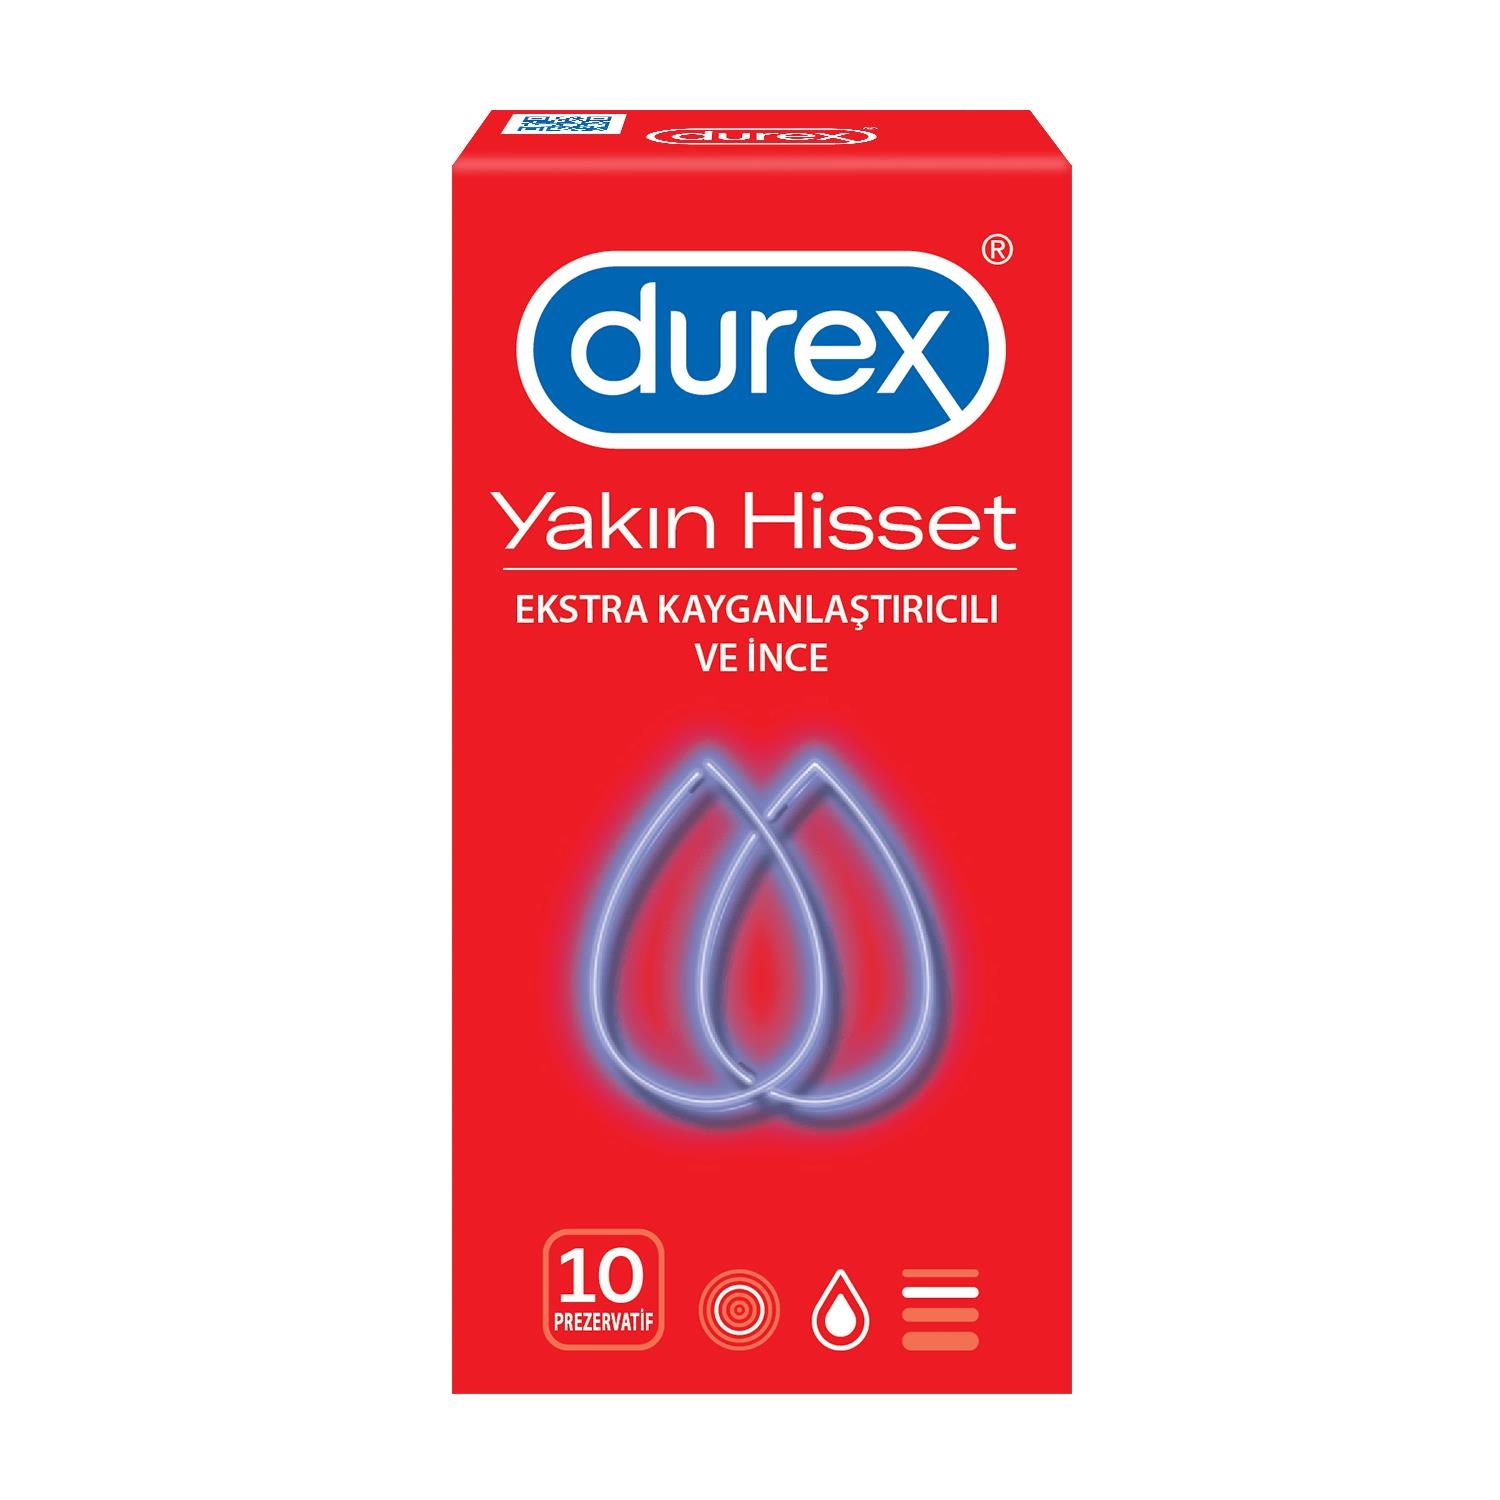 Durex Yakın Hisset 12li Prezervatif - 1